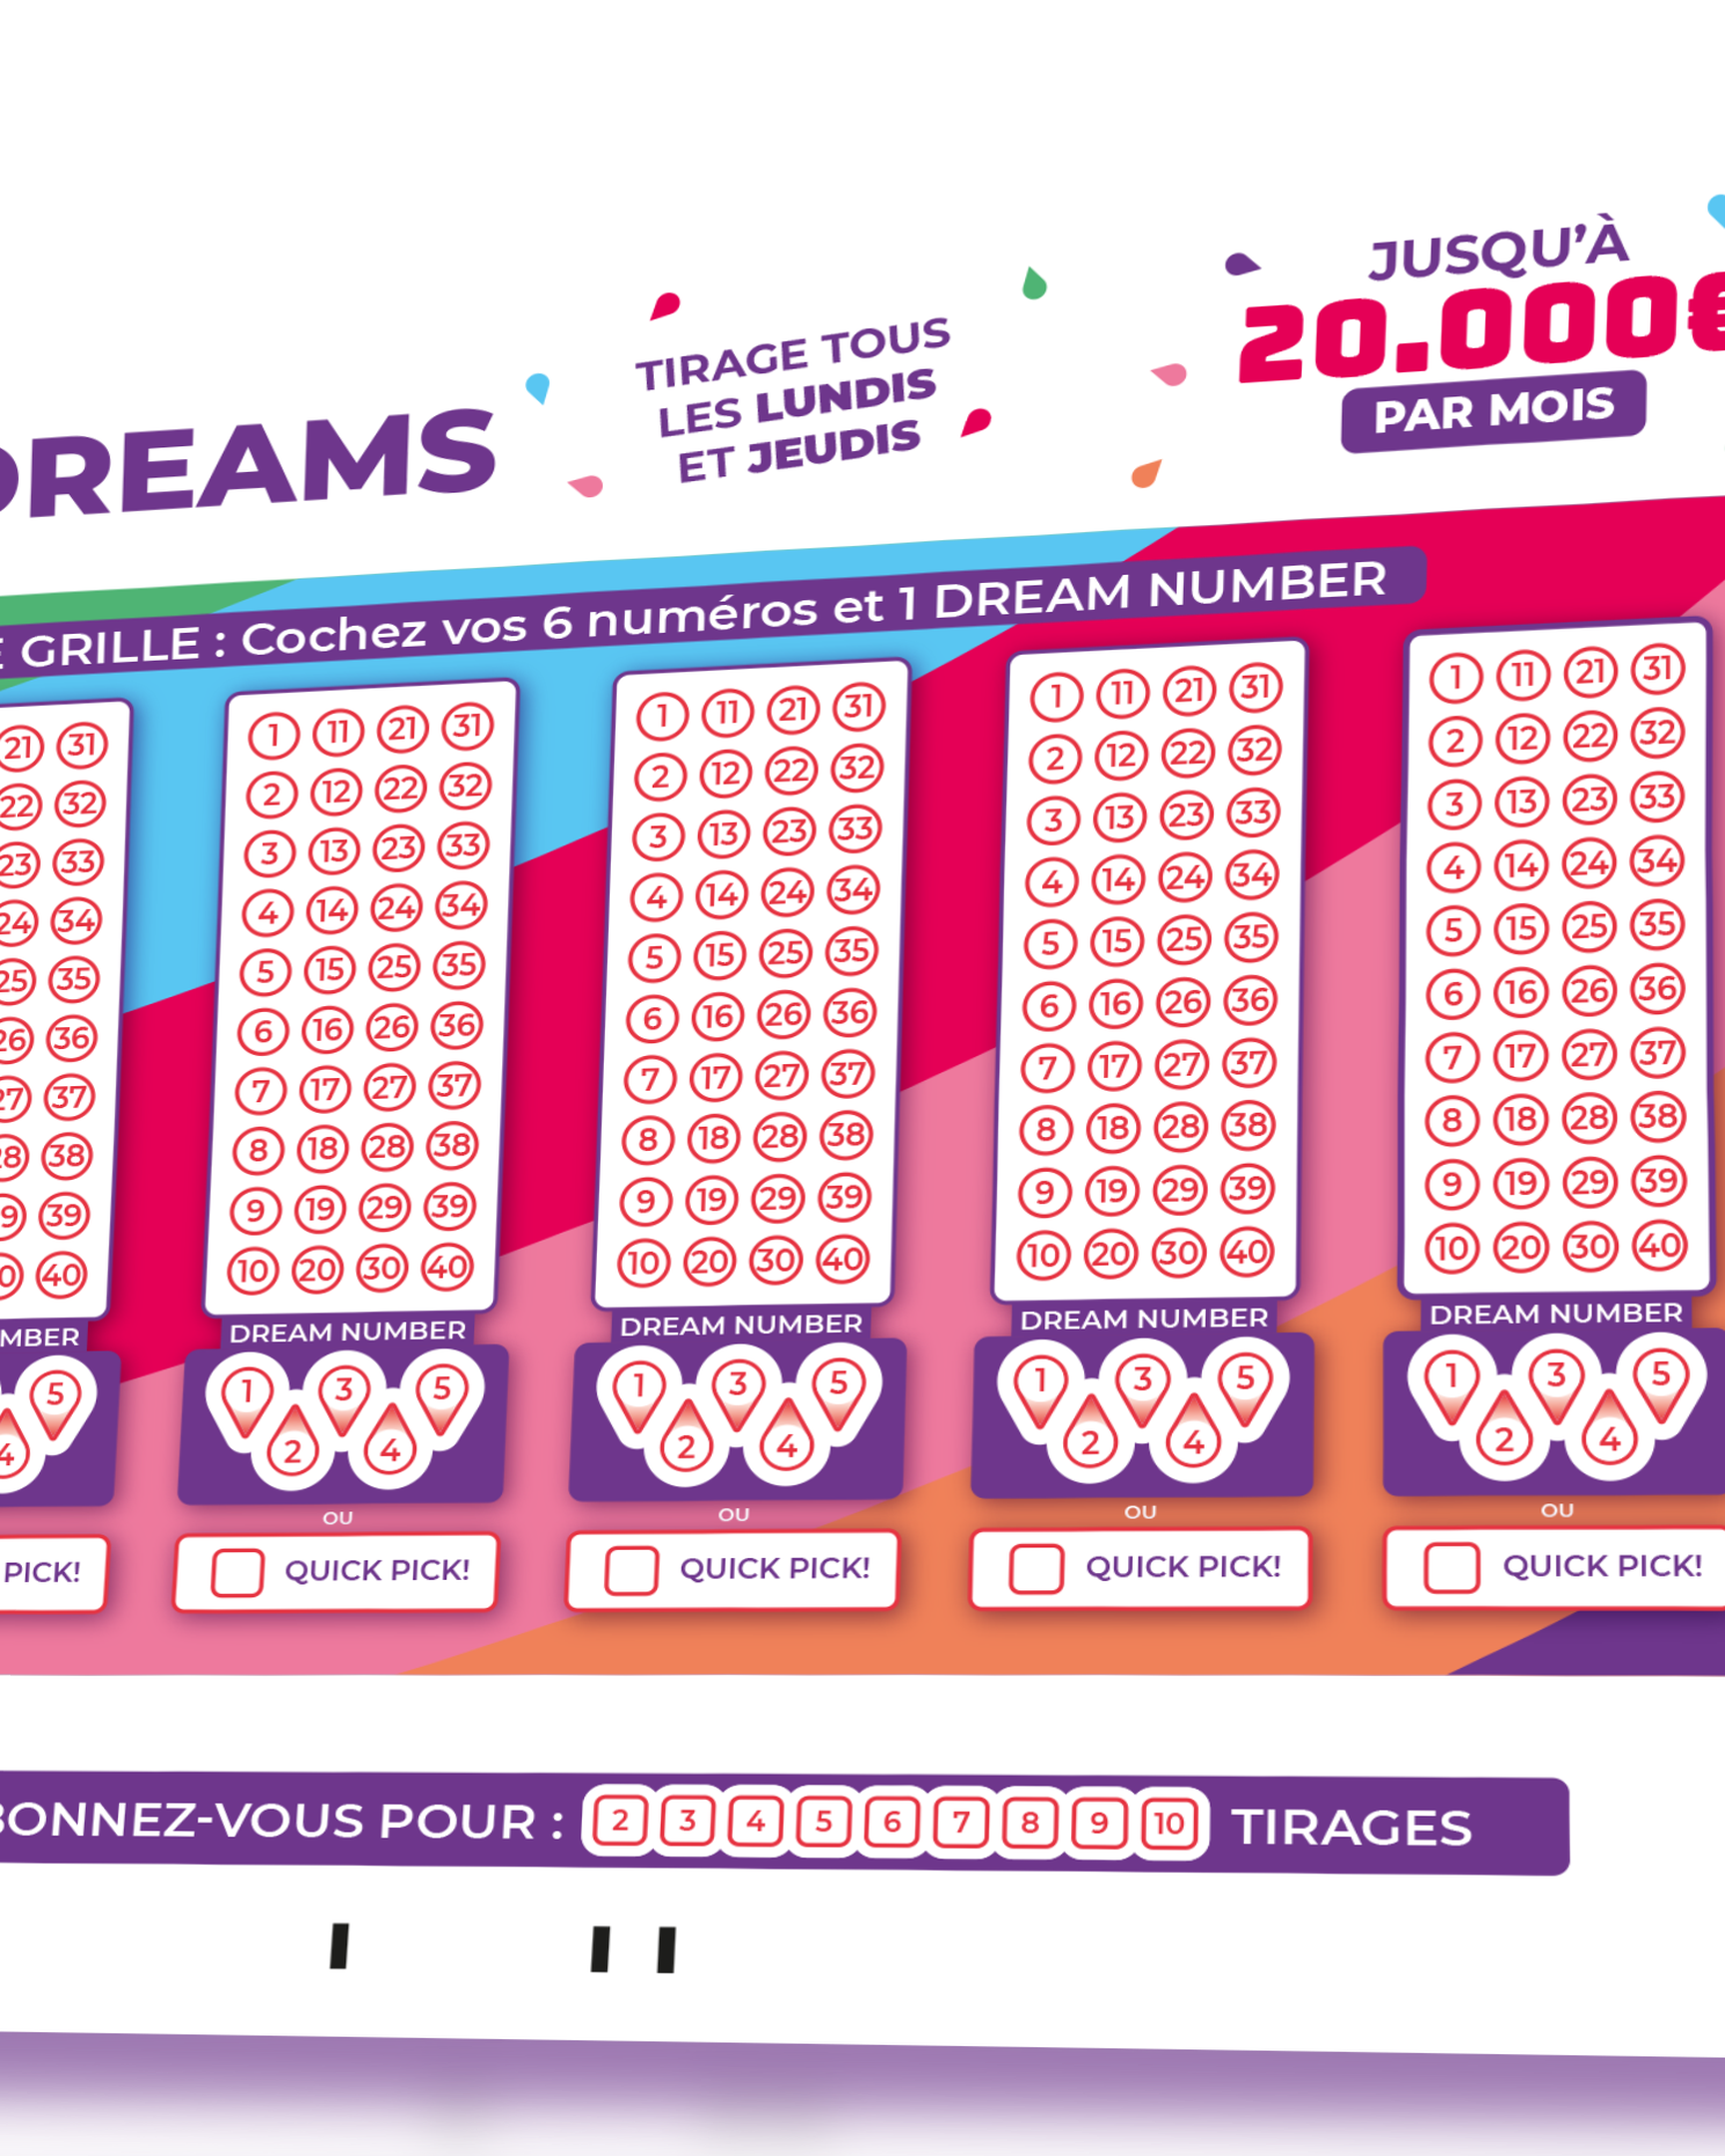 Distribuídos mais de 10 milhões de boletins do novo jogo Eurodreams